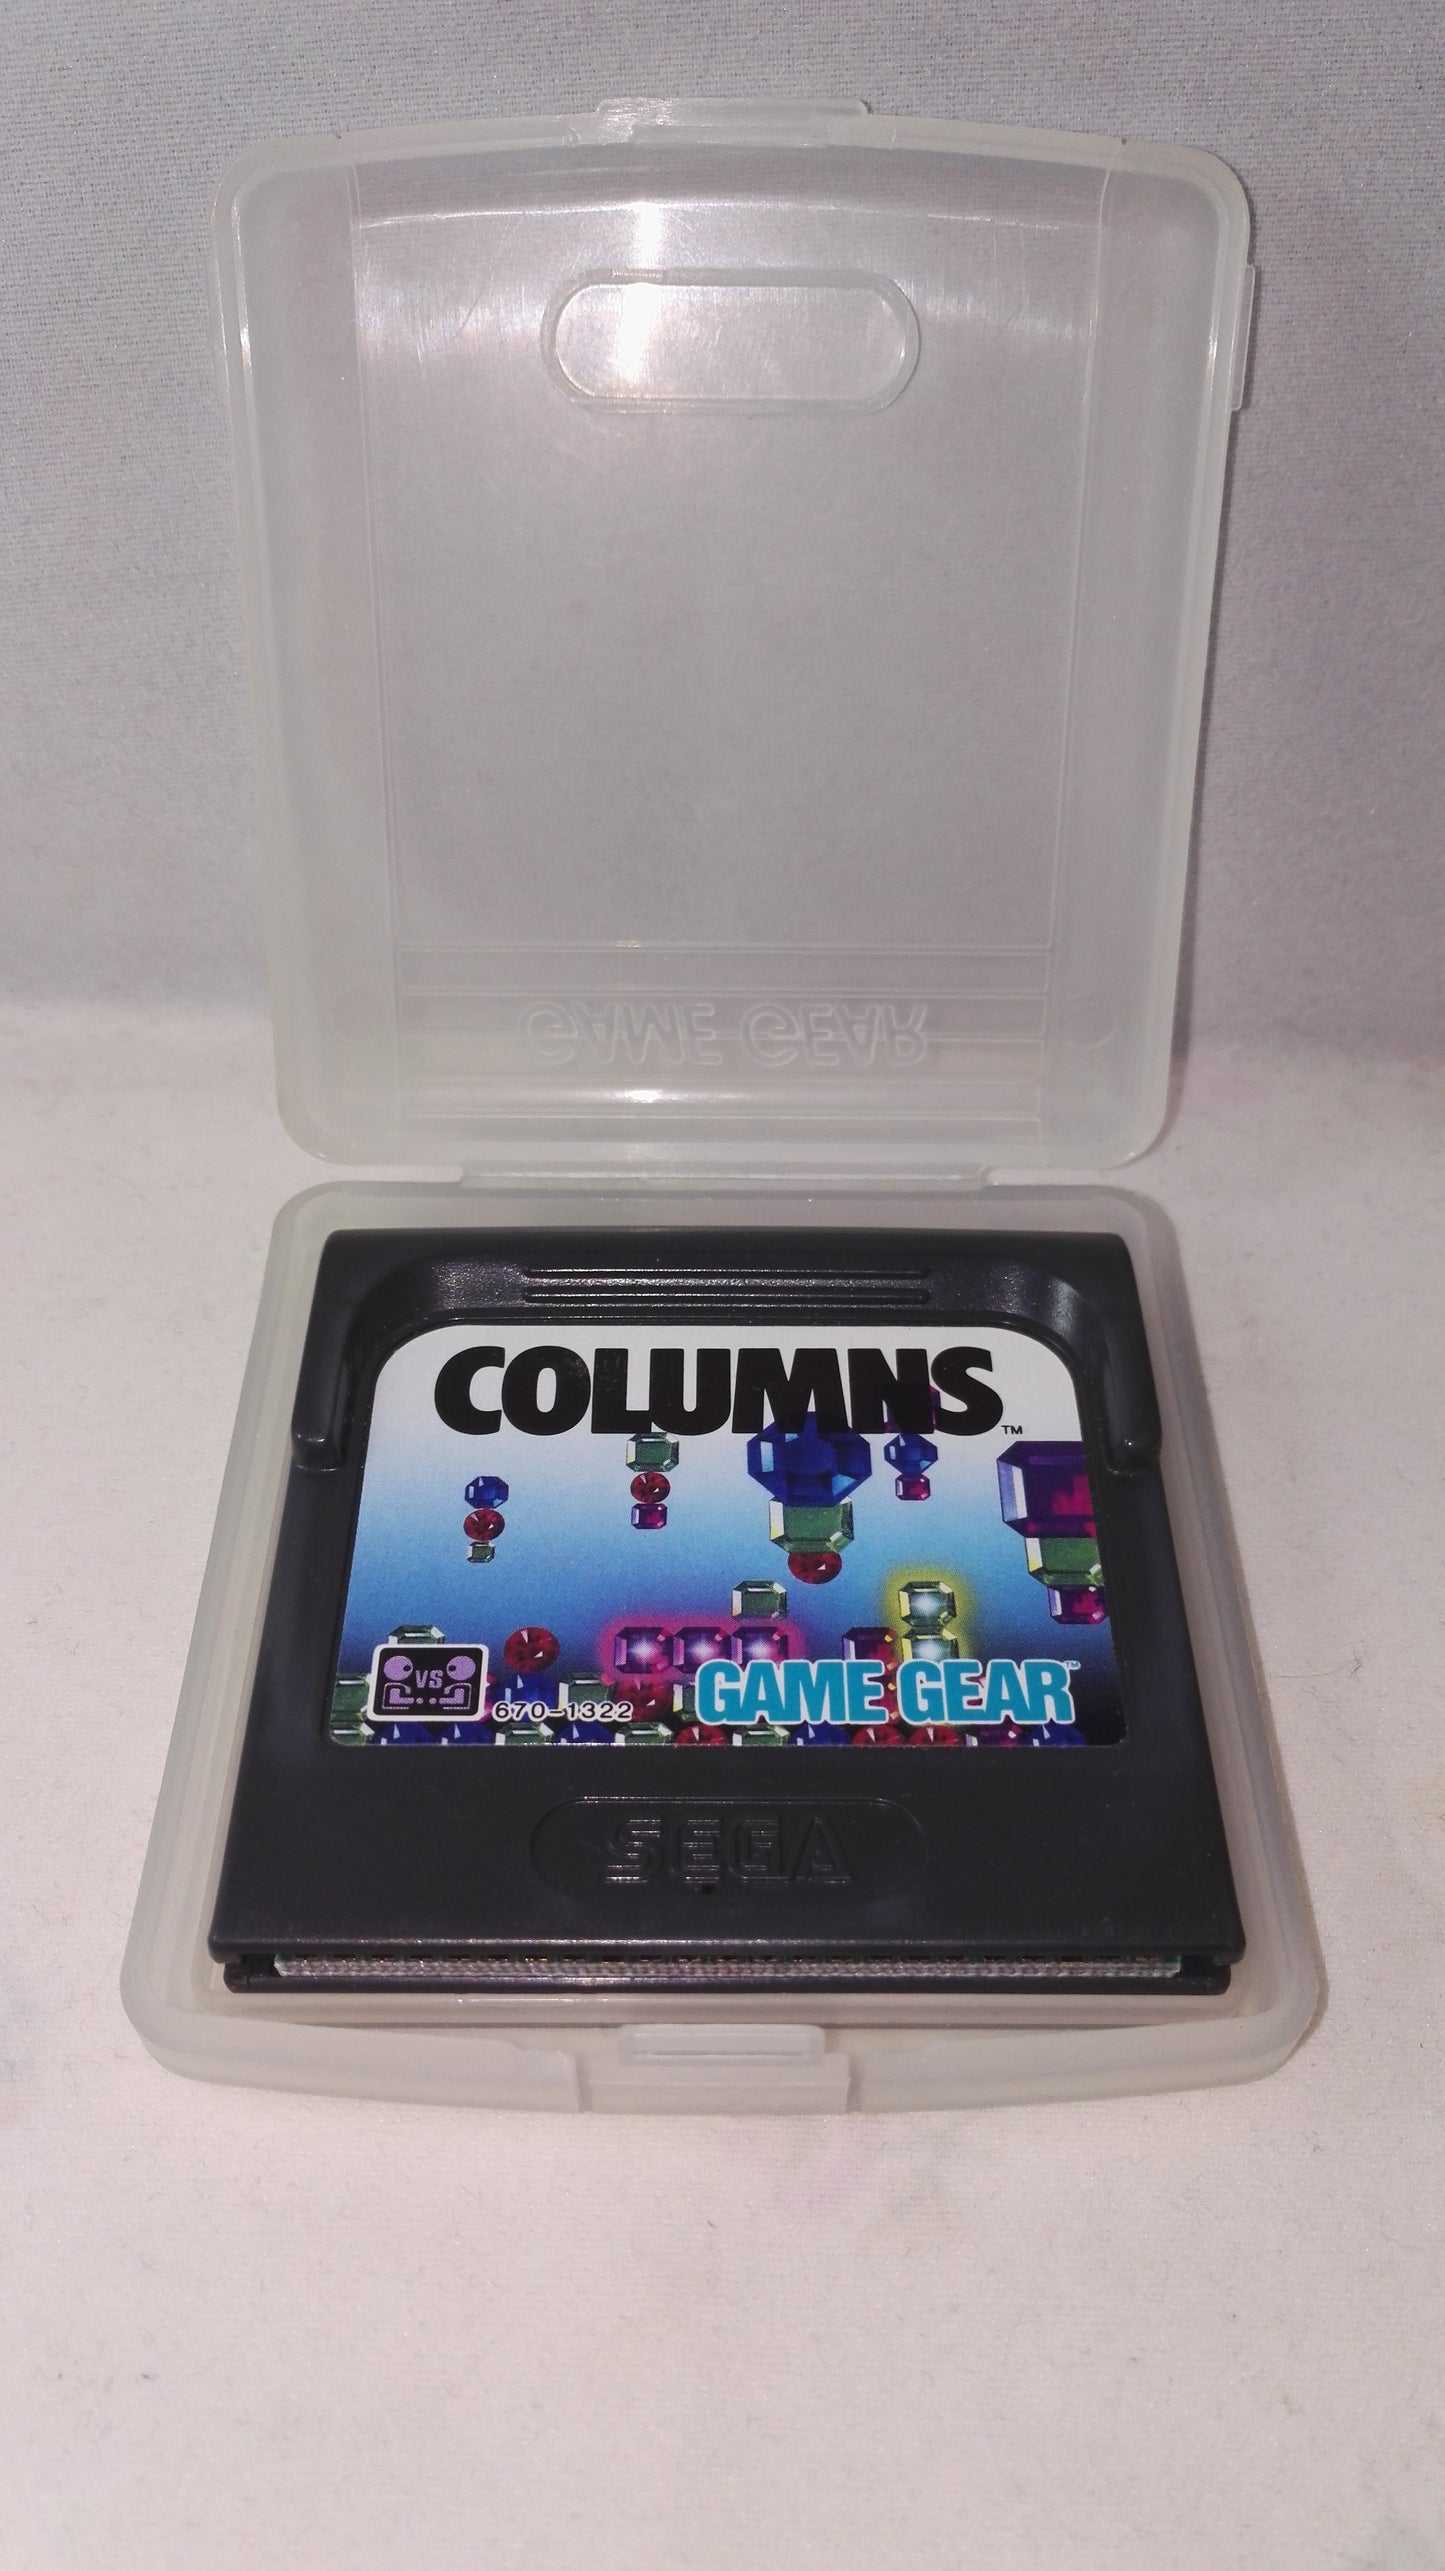 Columns (Sega Game Gear) Game in case